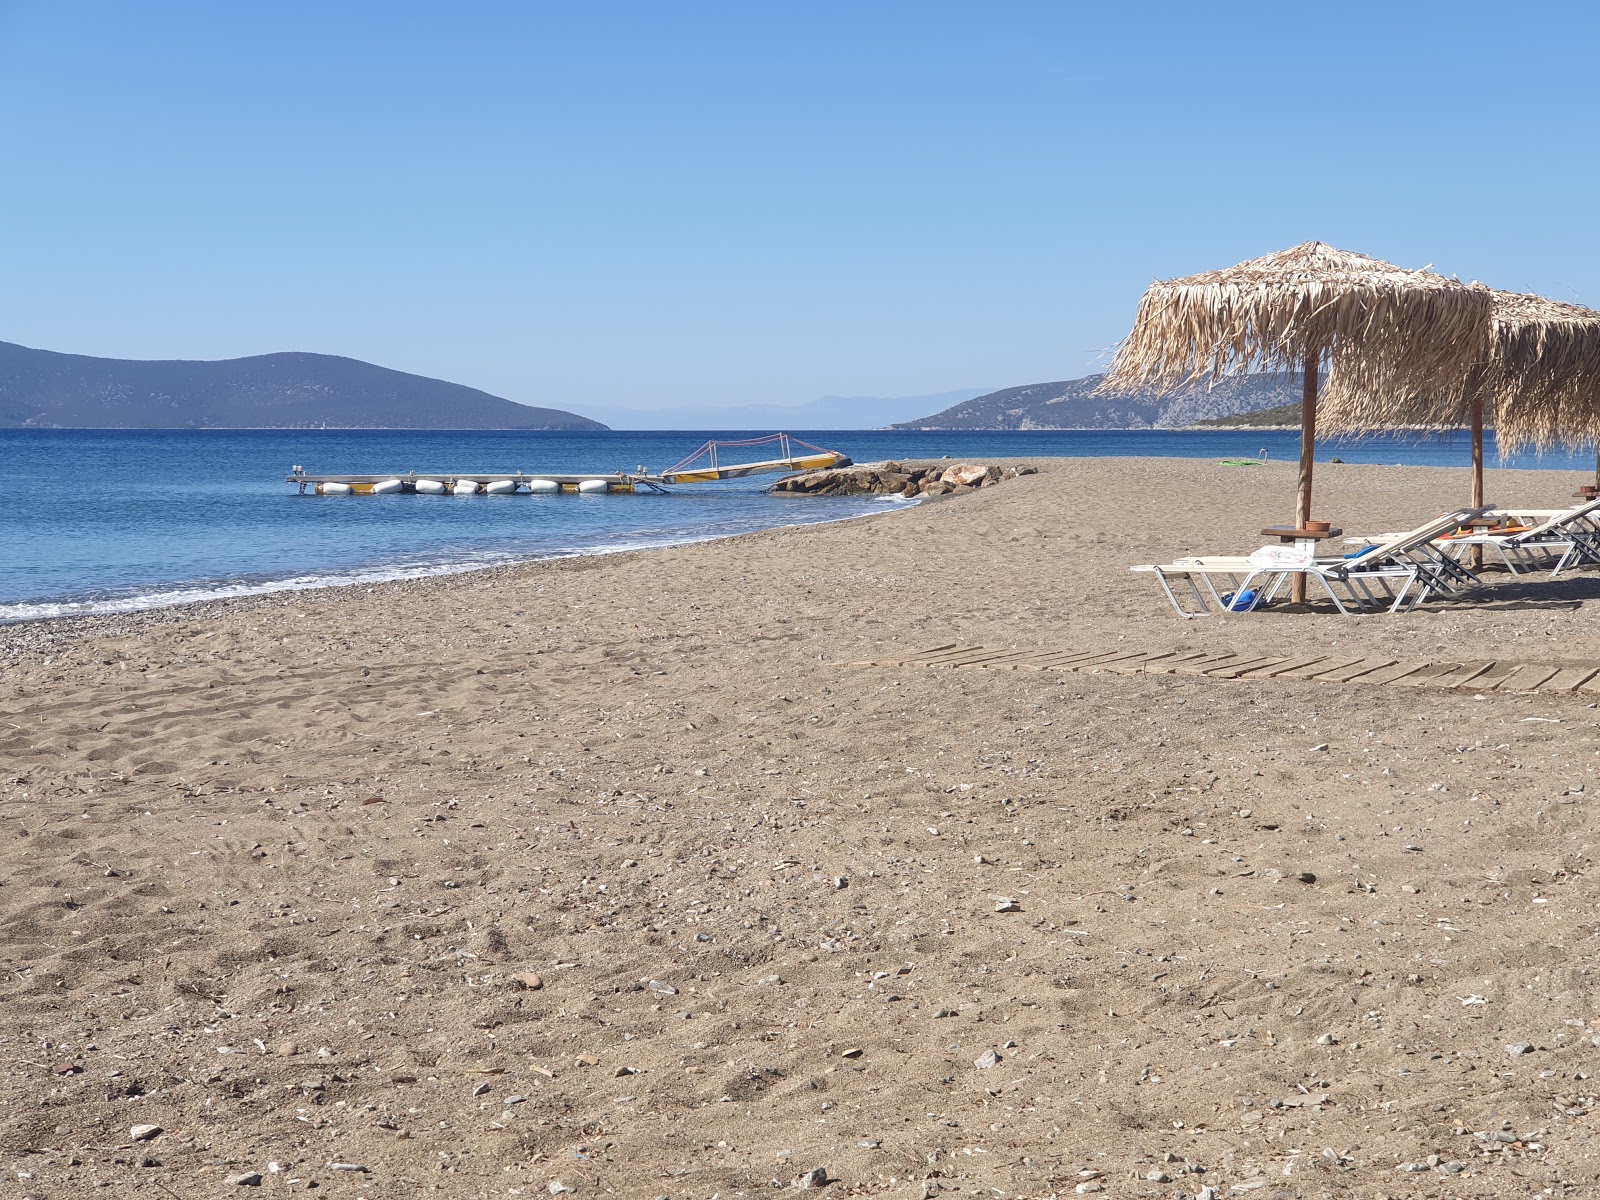 Fotografie cu Makis beach cu o suprafață de apa pură turcoaz